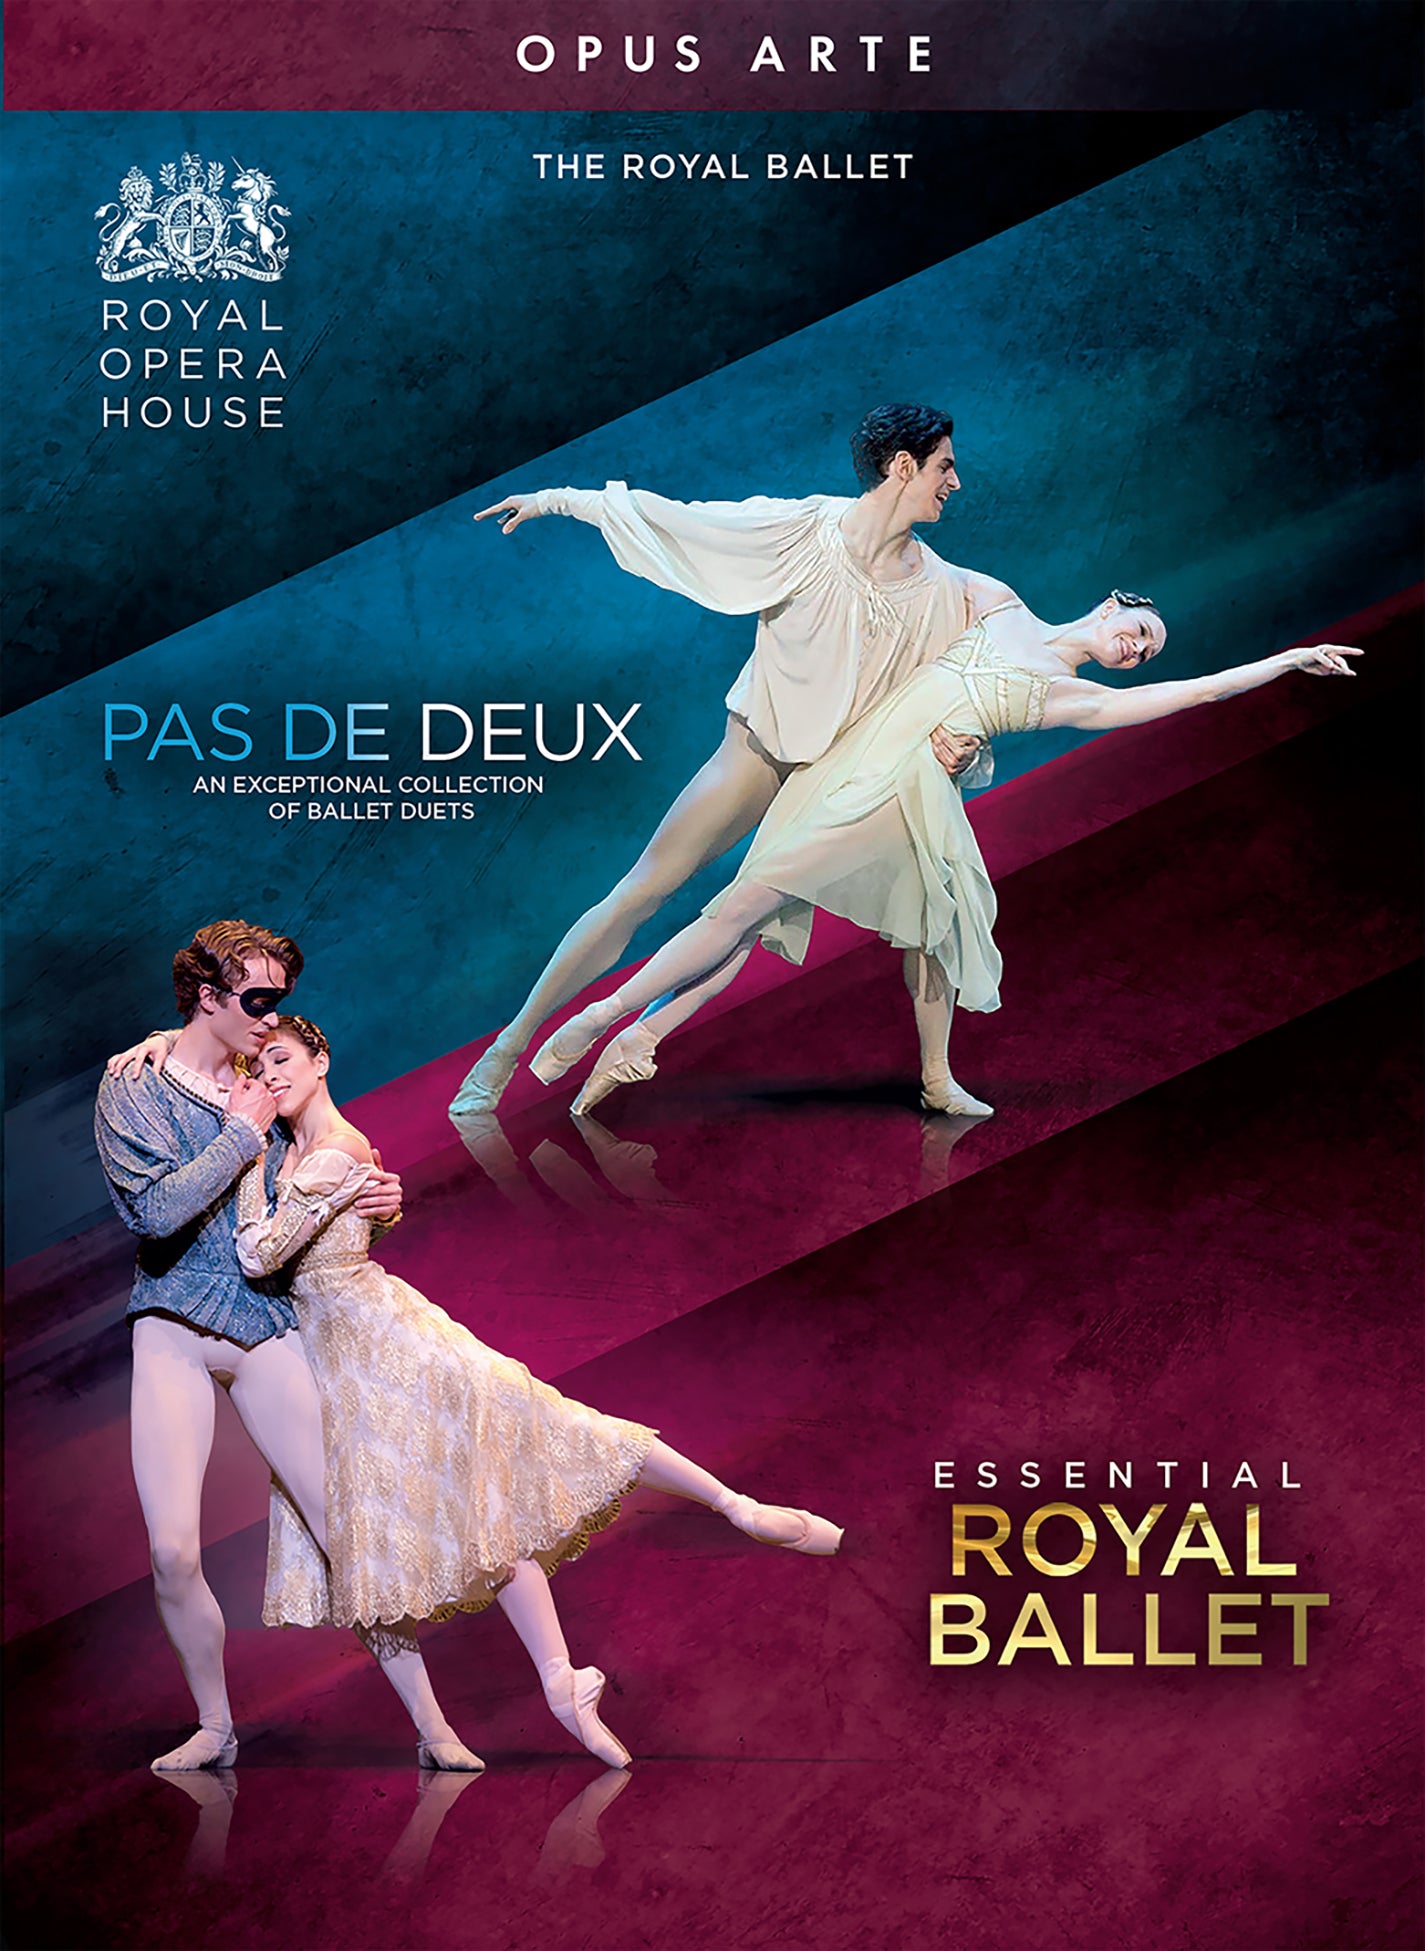 Pas de Deux - An Exceptional Collection of Ballet Duets / The Royal Ballet